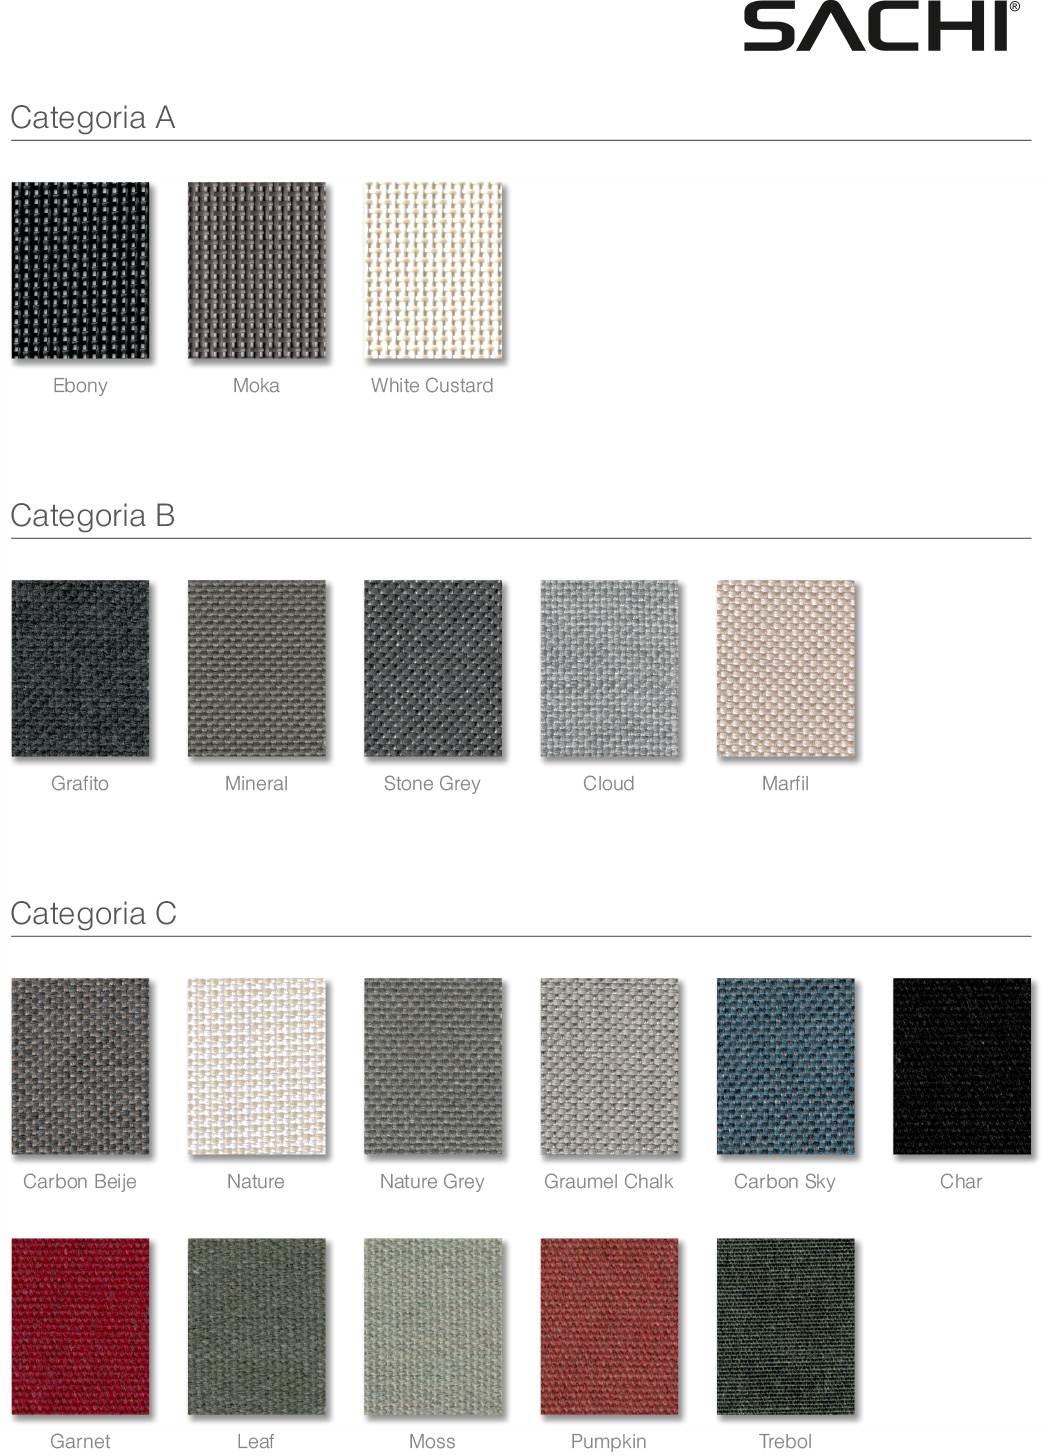 Sachi materials fabrics